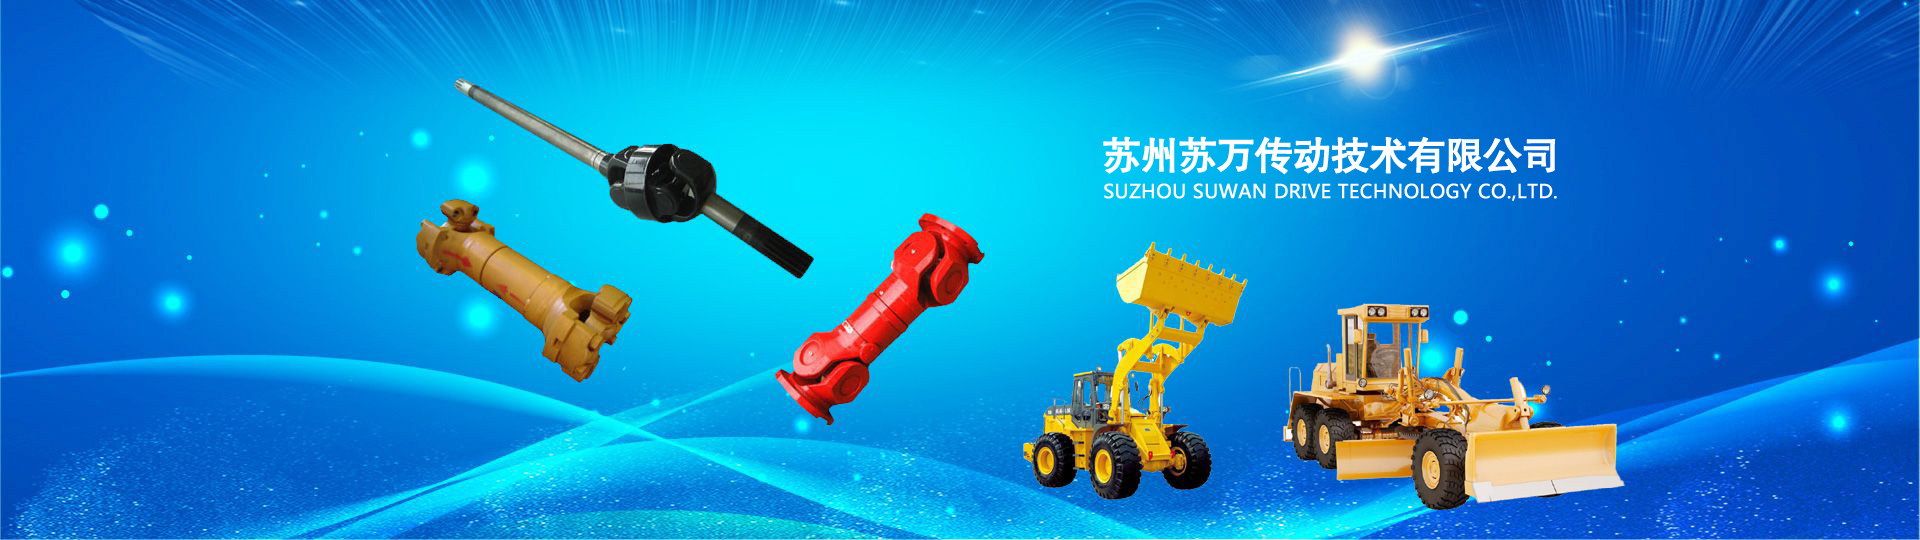 Suzhou Suwan Drive Technology Co.,Ltd.